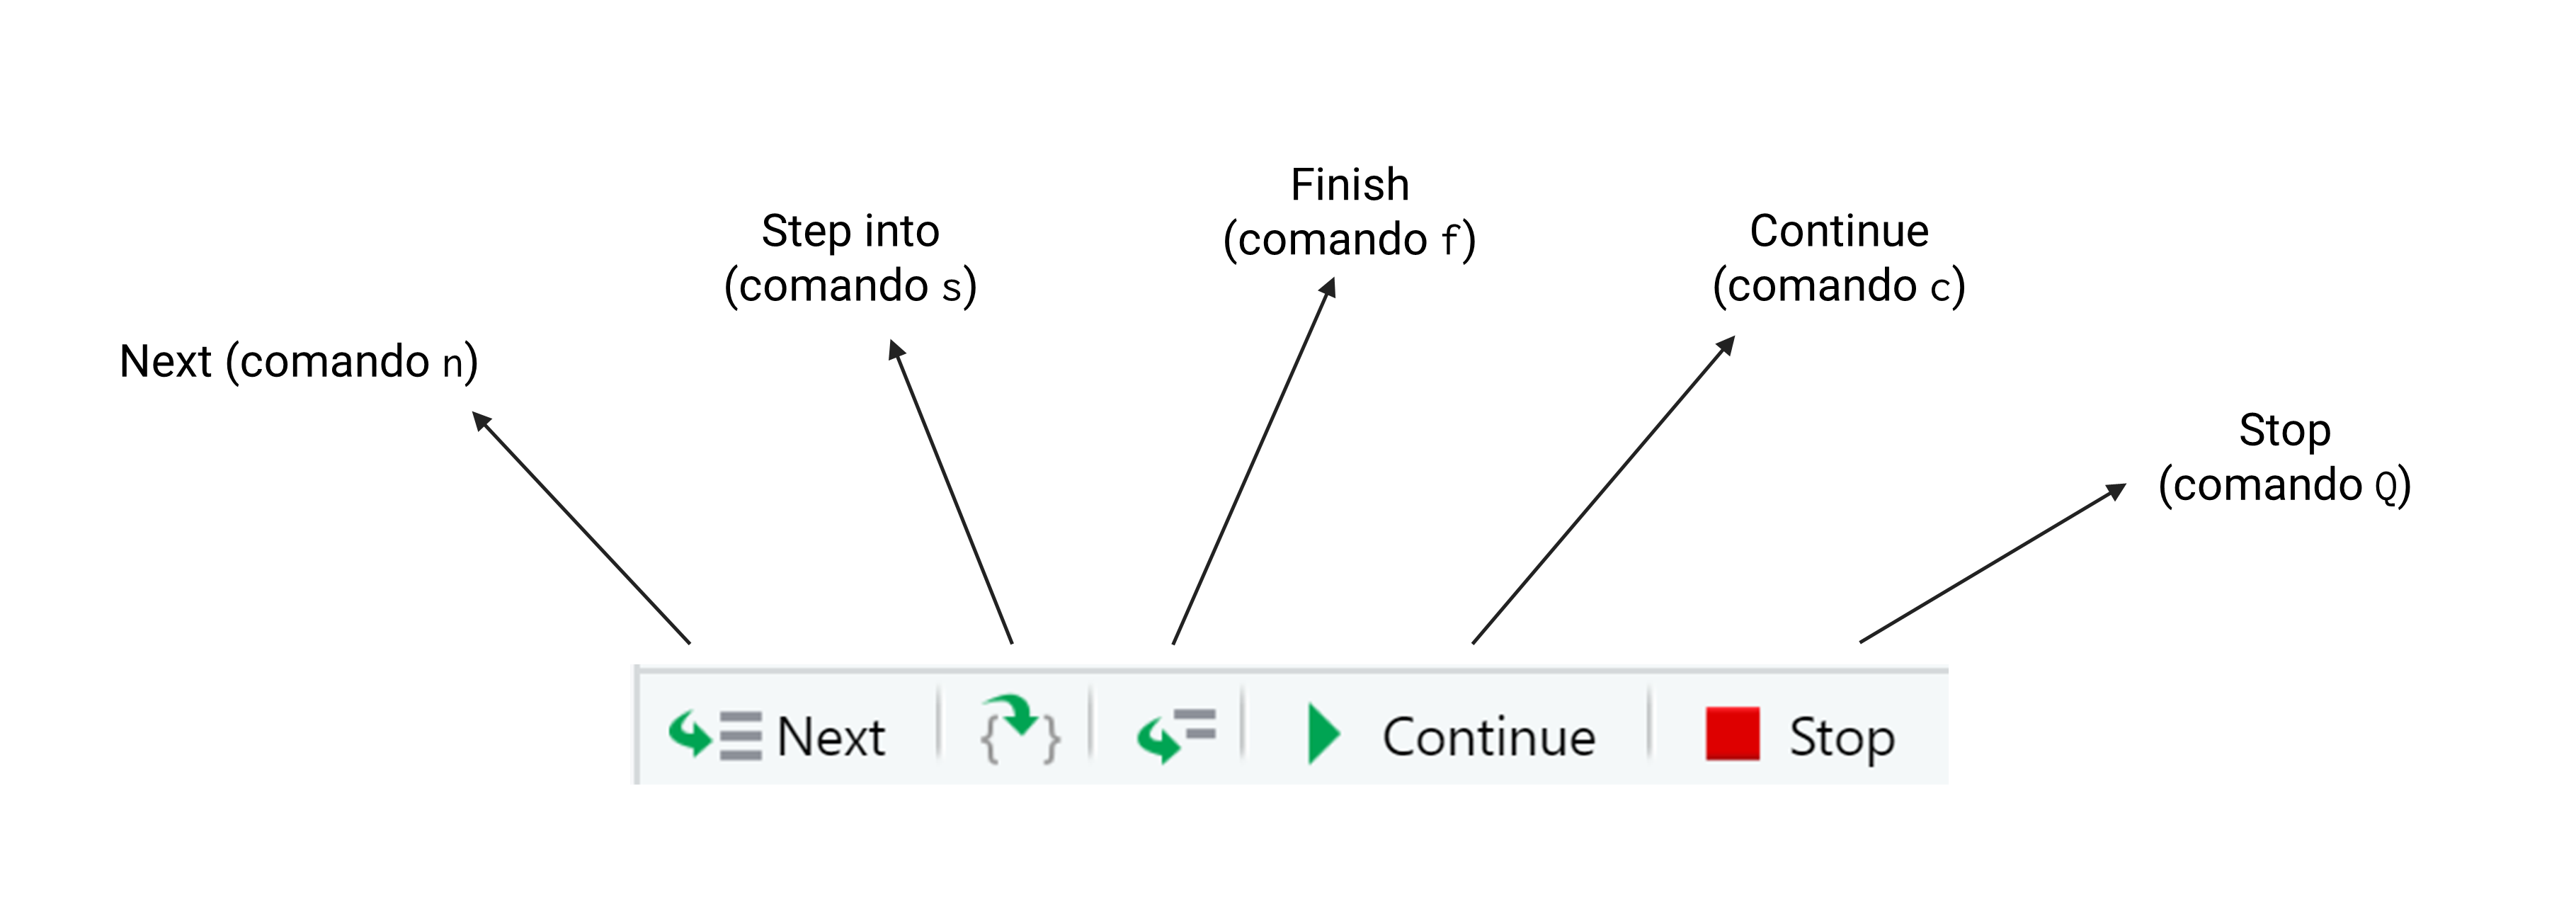 Relação entre os comandos em texto e os botões do painel de *debug* do RStudio